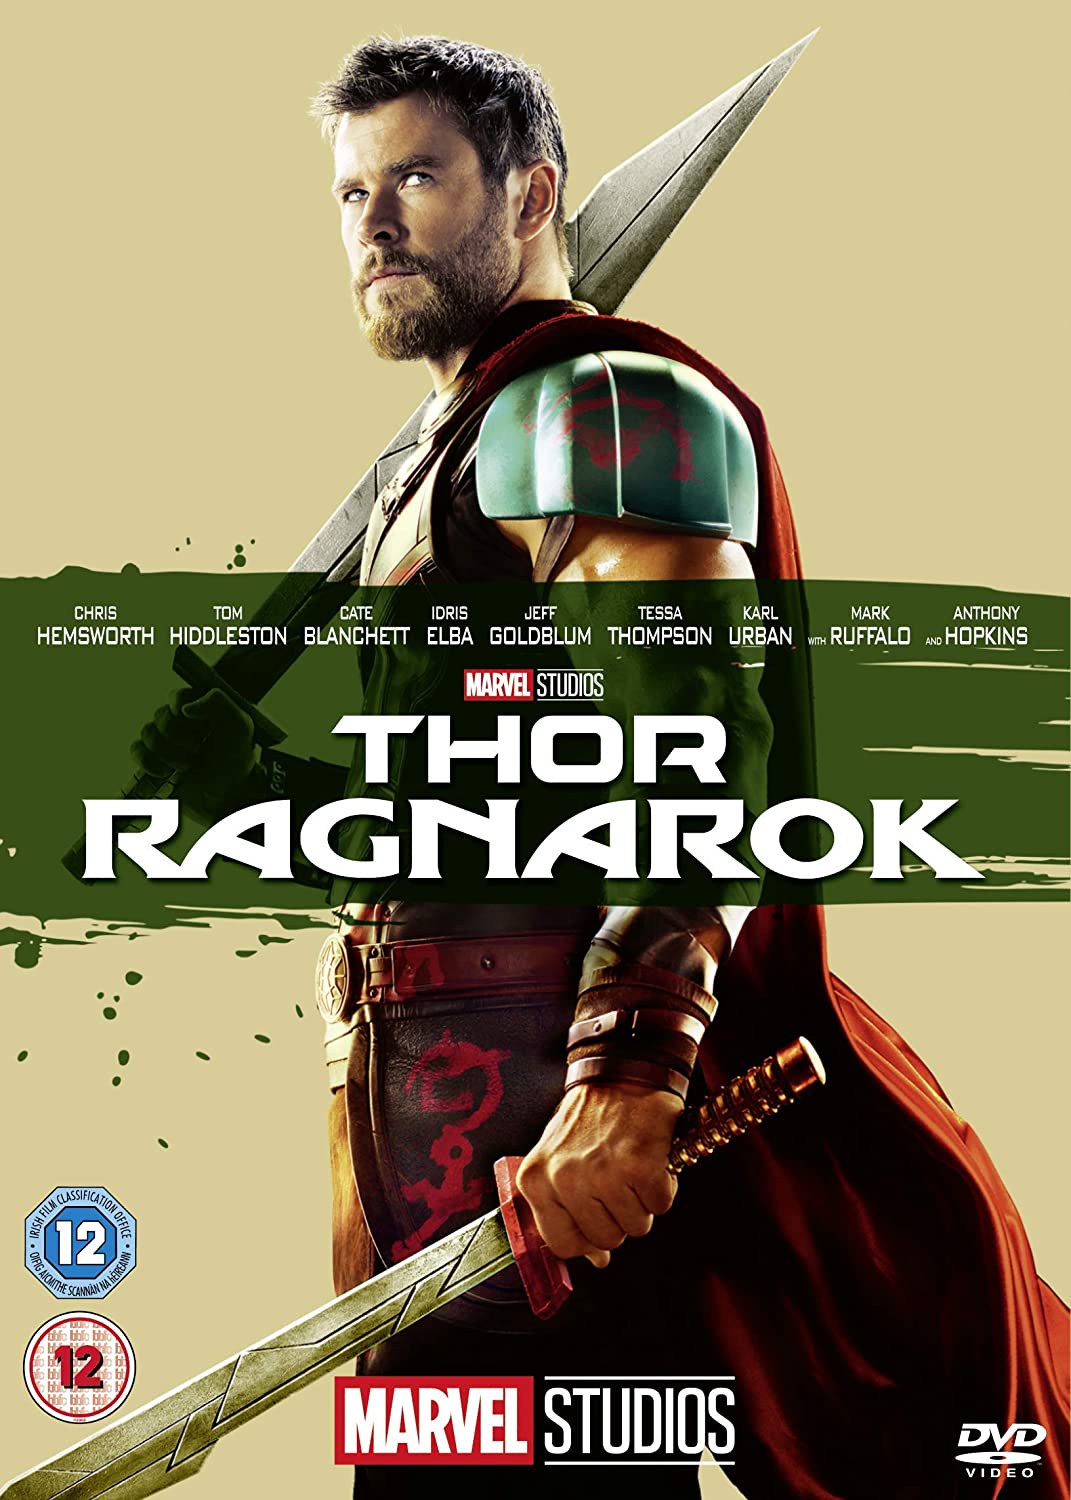 Thor Ragnarok - Action/Fantasy [DVD]